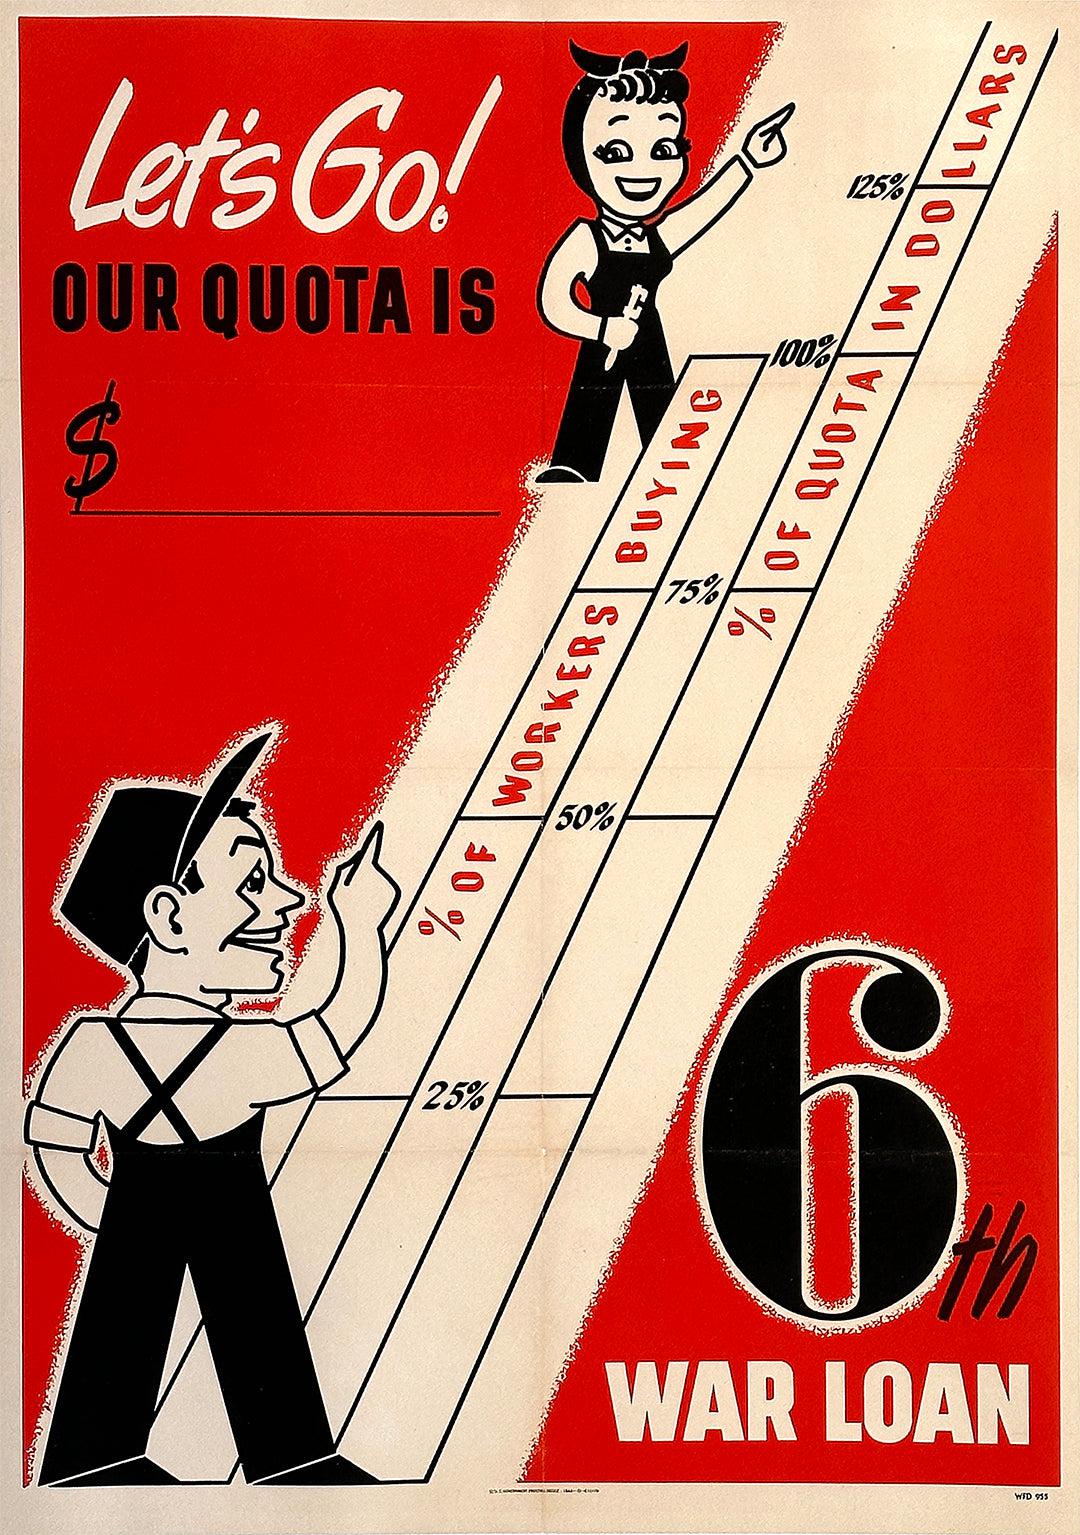 Original Vintage Let's Go! 6th War Loan WWII Poster 1944